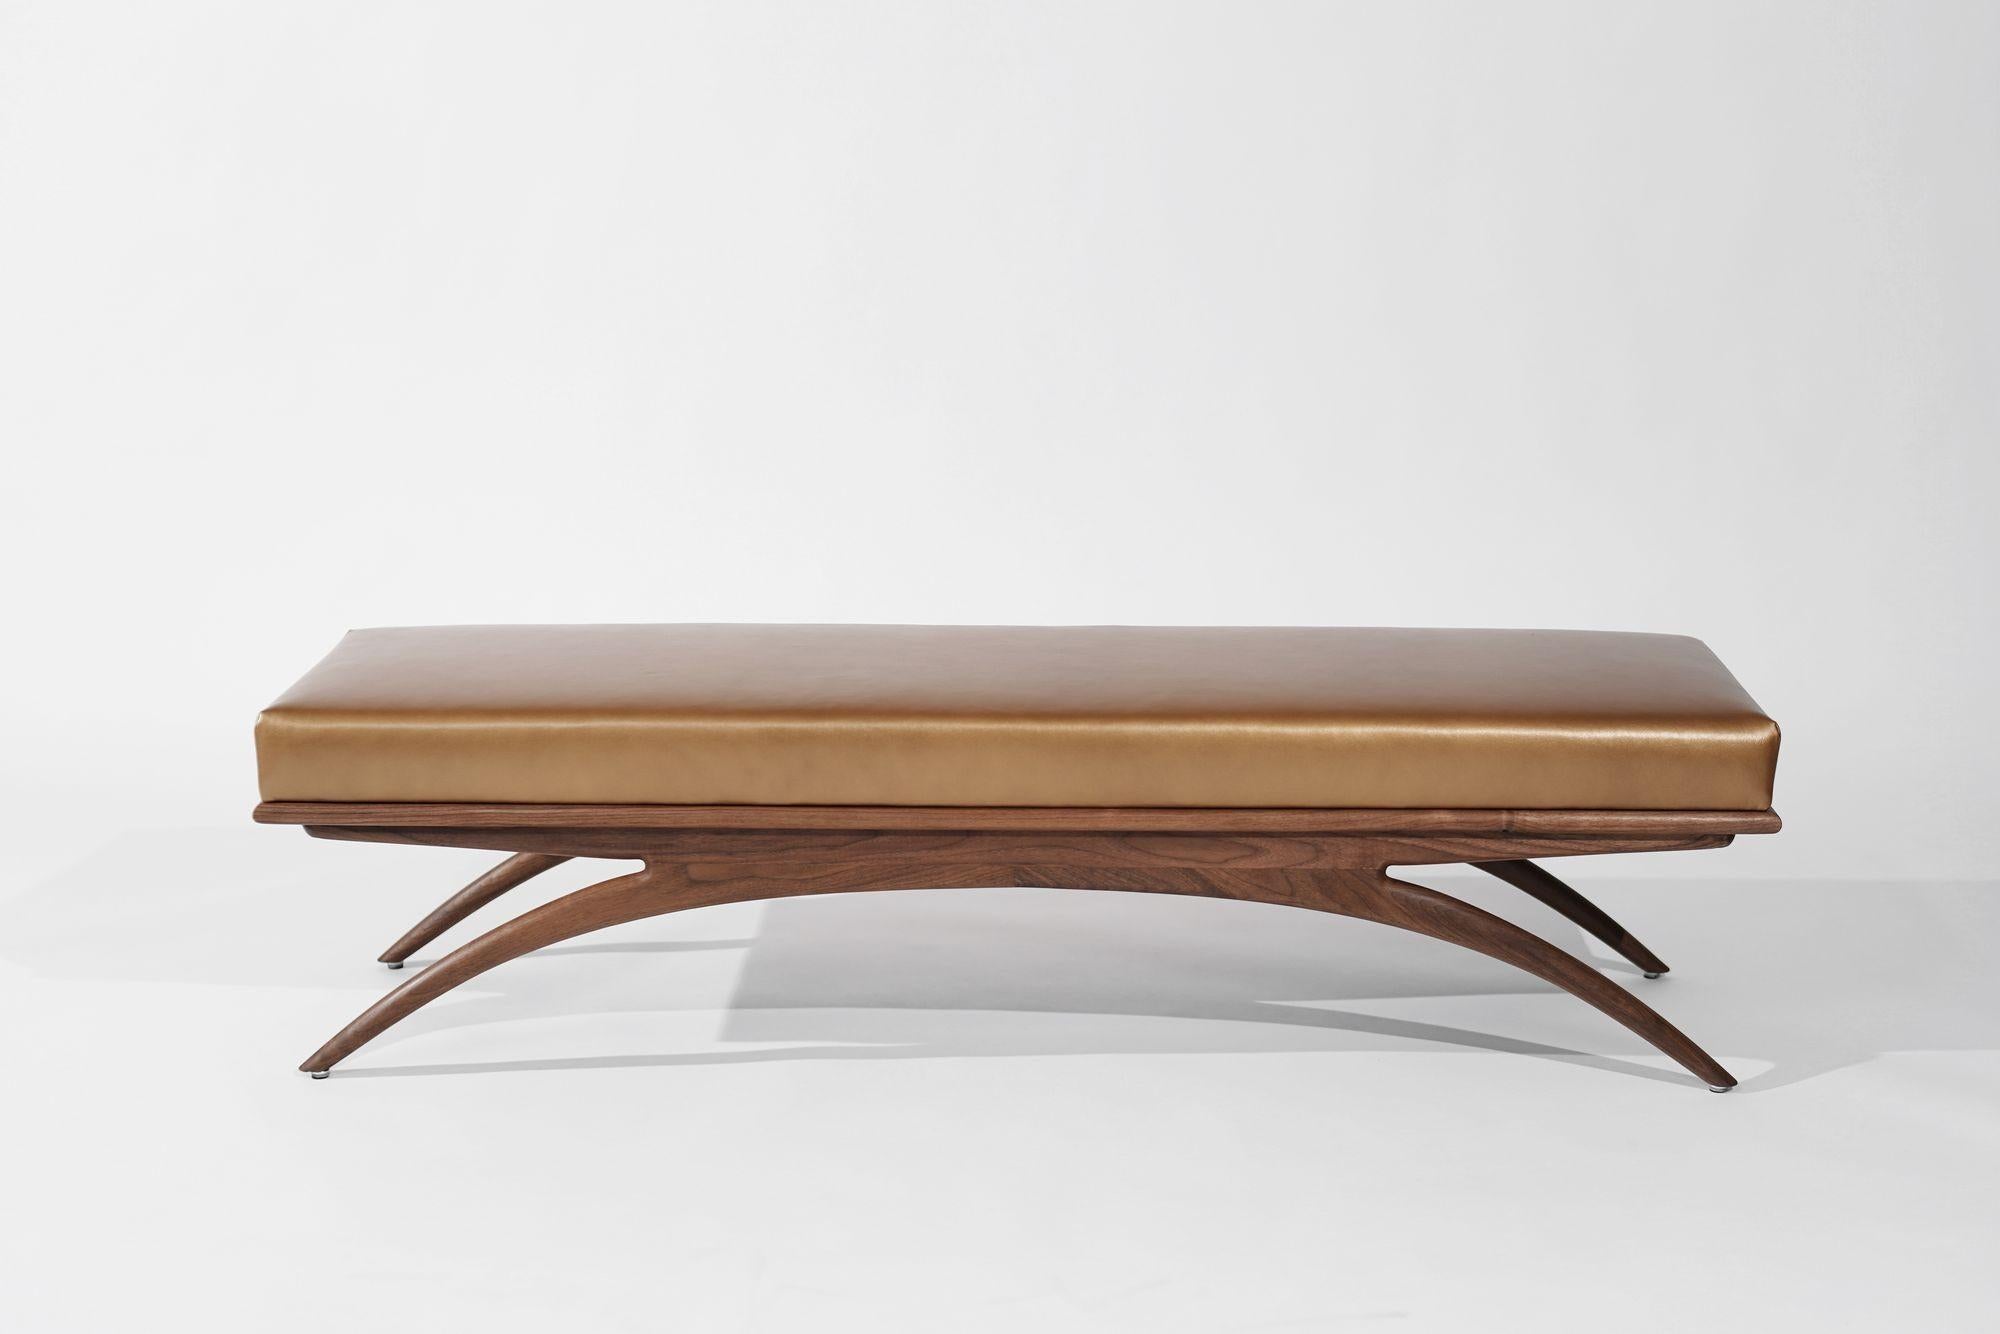 Die Convex Bench von Carlos Solano für Stamford Modern - eine exquisite Mischung aus zeitloser Handwerkskunst und leichtem Design. Die sorgfältig aus massiver Eiche oder Nussbaum gefertigte Bank strahlt Raffinesse aus und ist eine perfekte Ergänzung